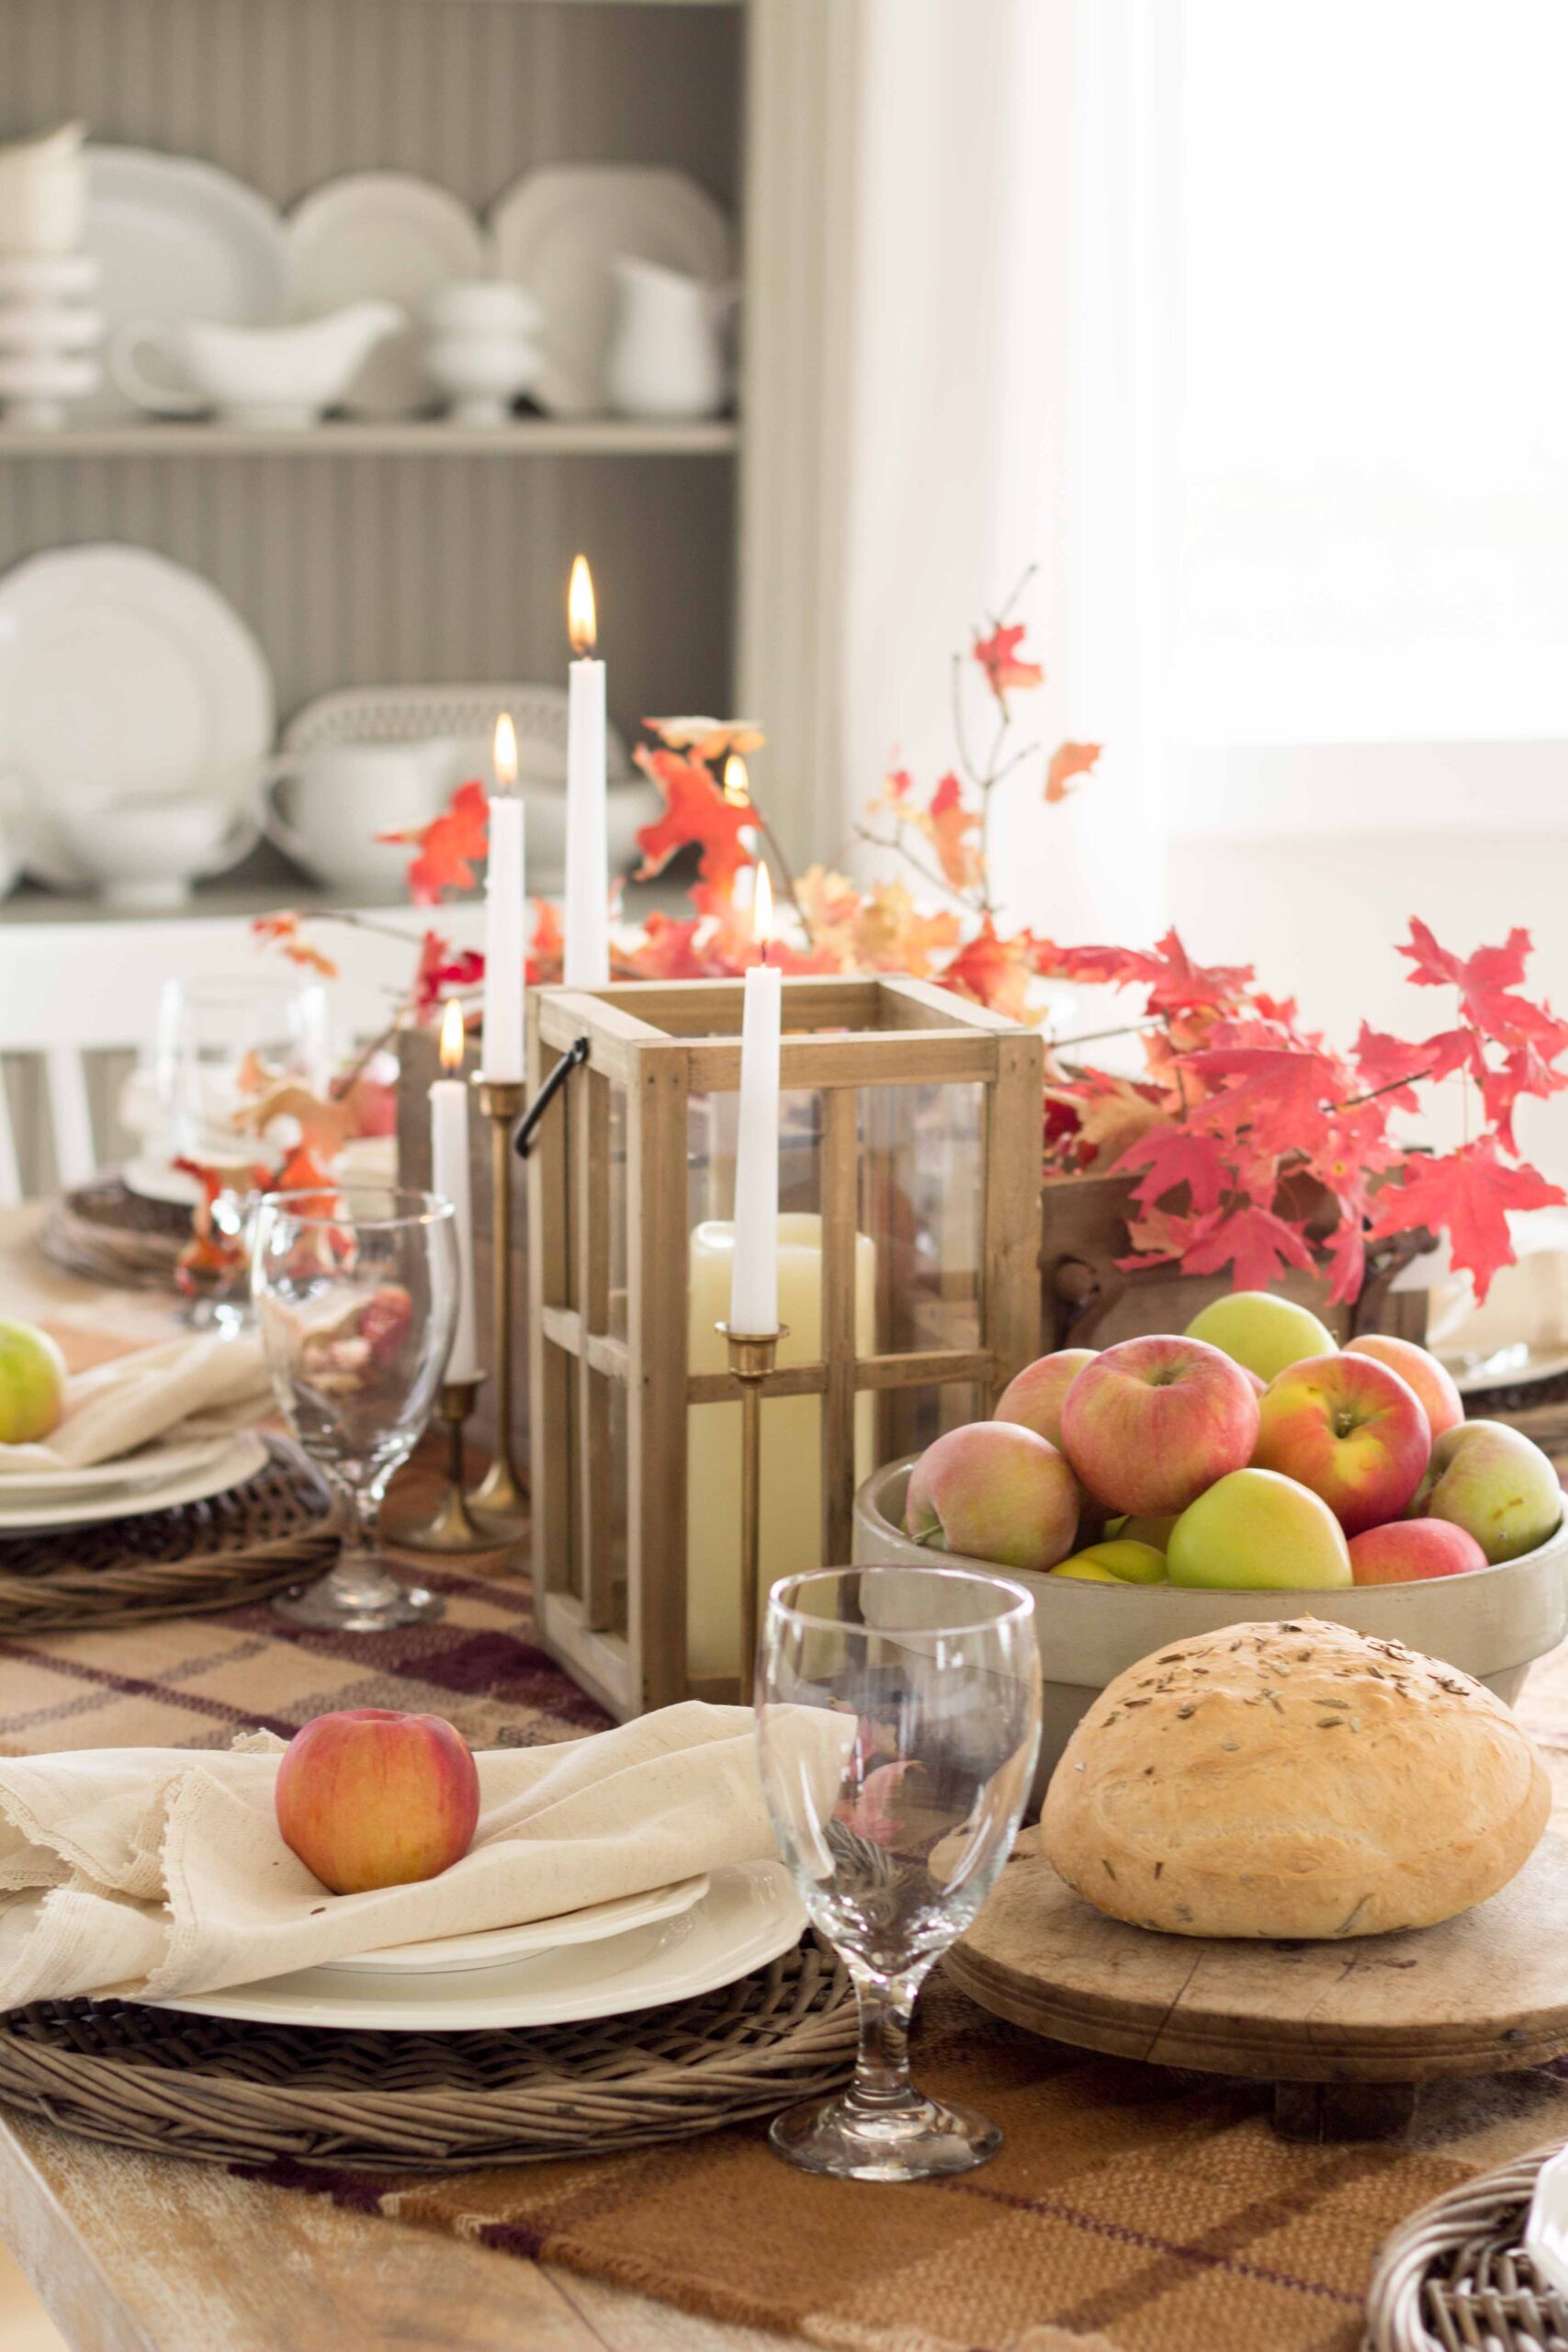 Autumn Table By Candlelight - Handmade Farmhouse